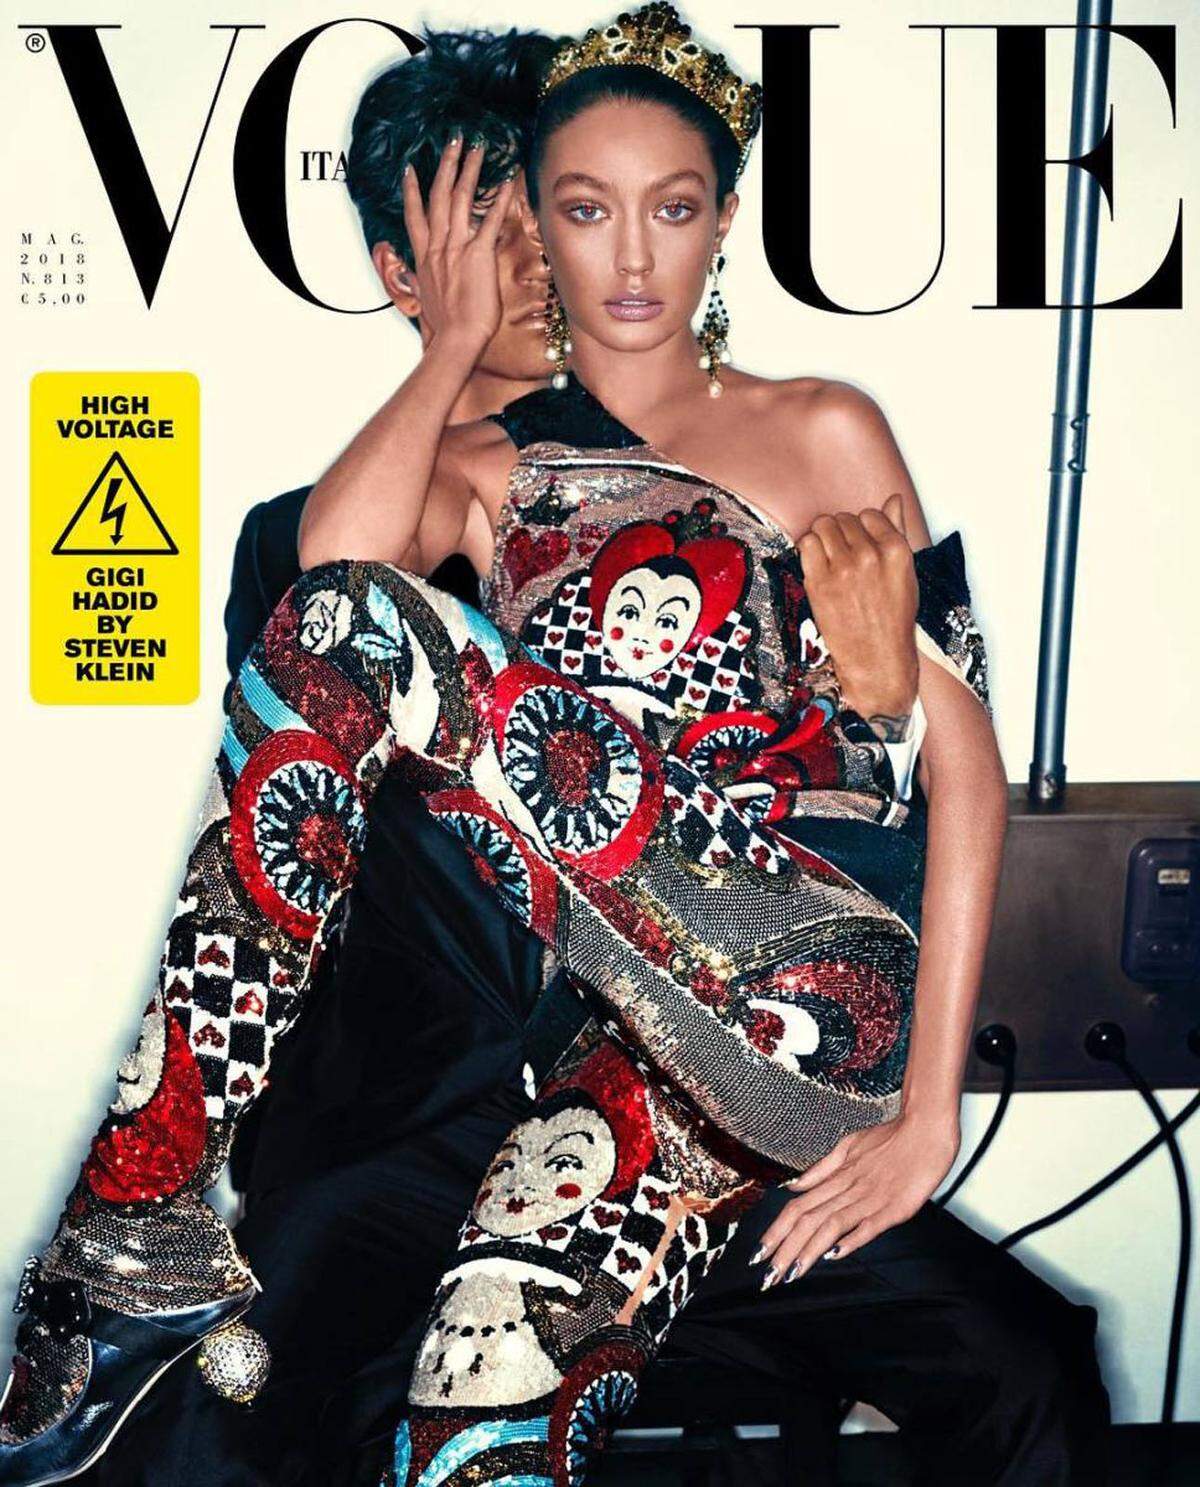 Auch "Blackface"-Kontroversen gab es wieder. Model Gigi Hadd wurde für das Cover der italienischen "Vogue" etwa extrem dunkel abgelichtet. 